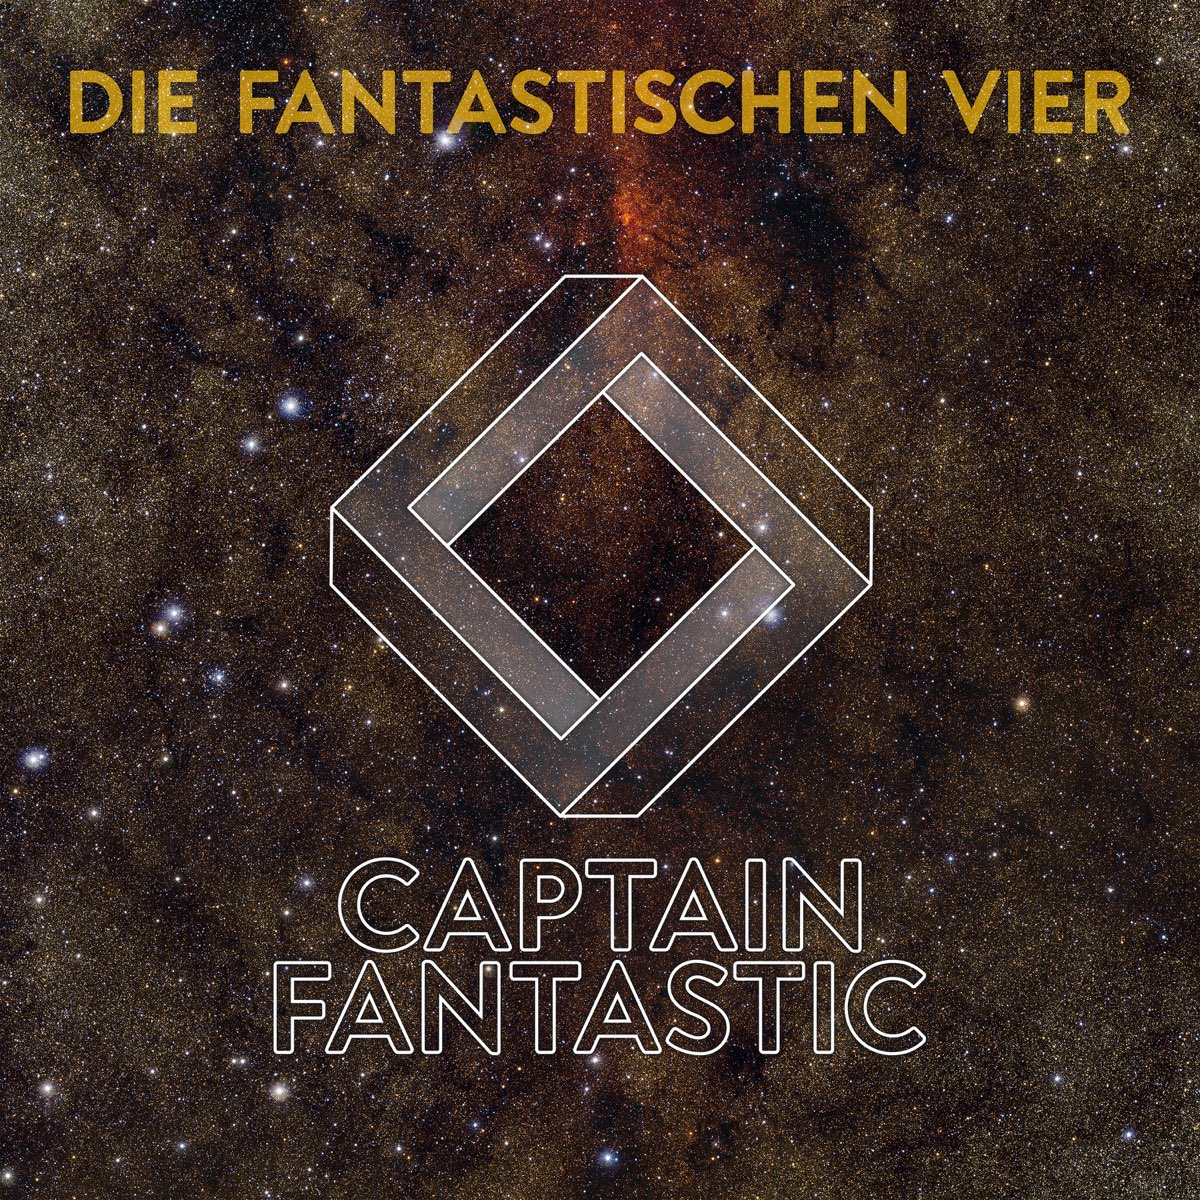 Captain Fantastic by Die Fantastischen Vier on iTunes